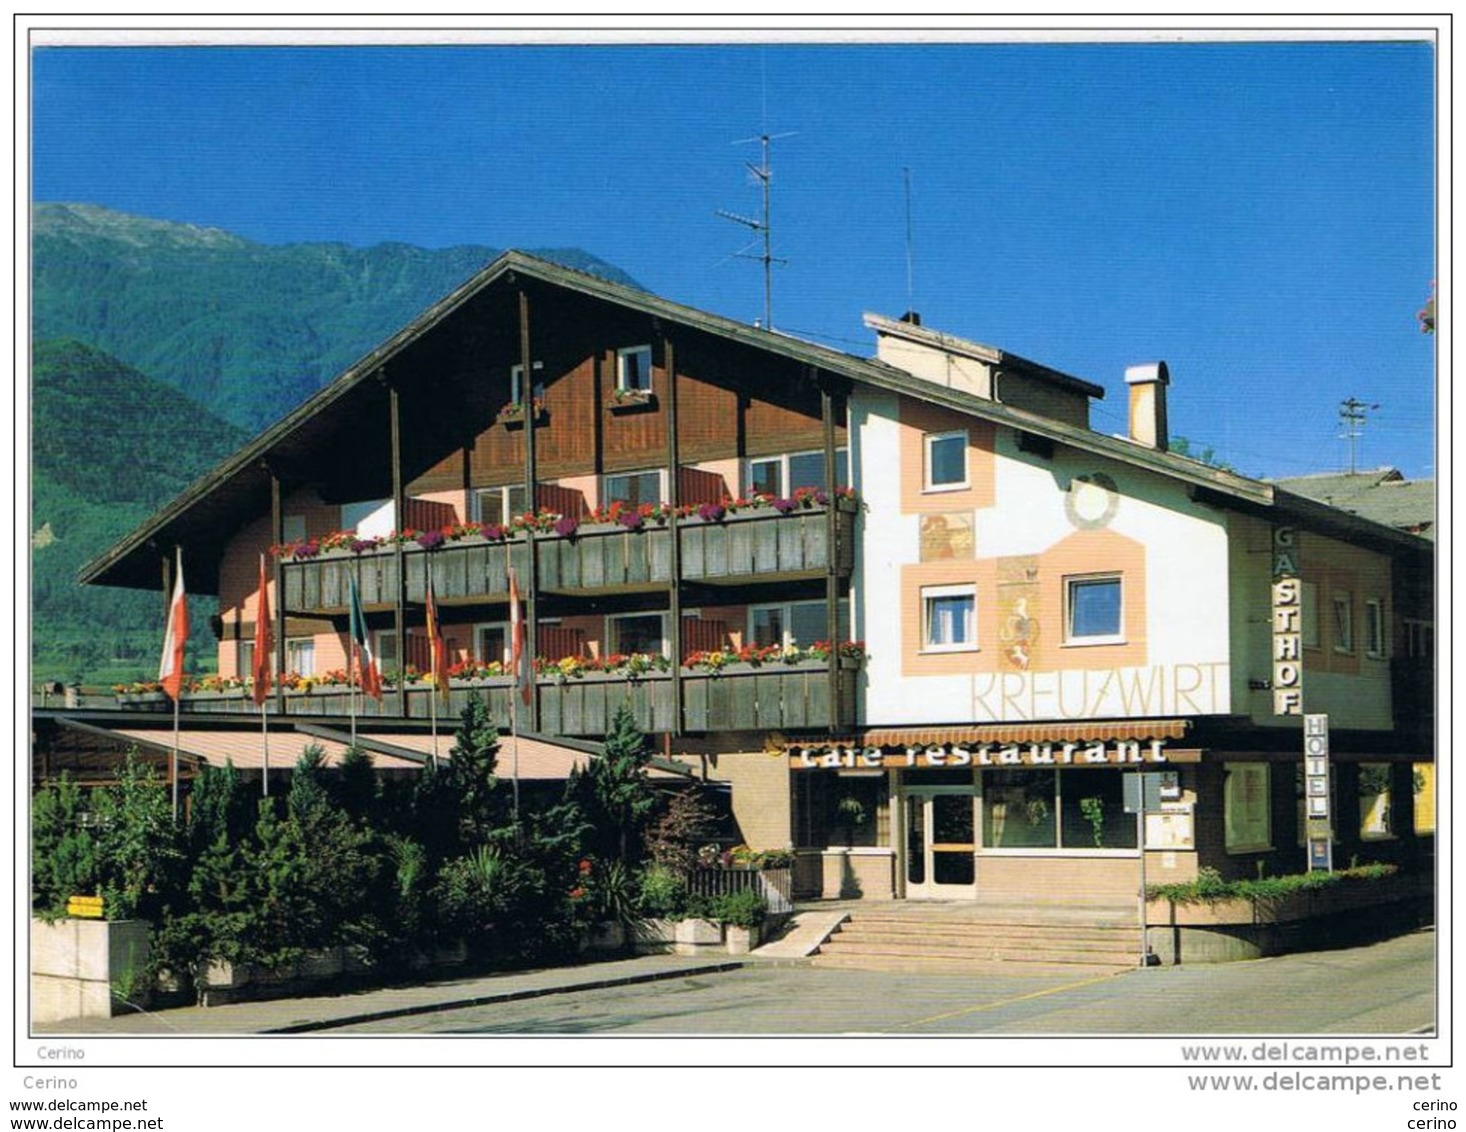 NATURNO (BZ):   HOTEL  KREUZWIRT  -  PER  LA  SVIZZERA  -  FG - Alberghi & Ristoranti